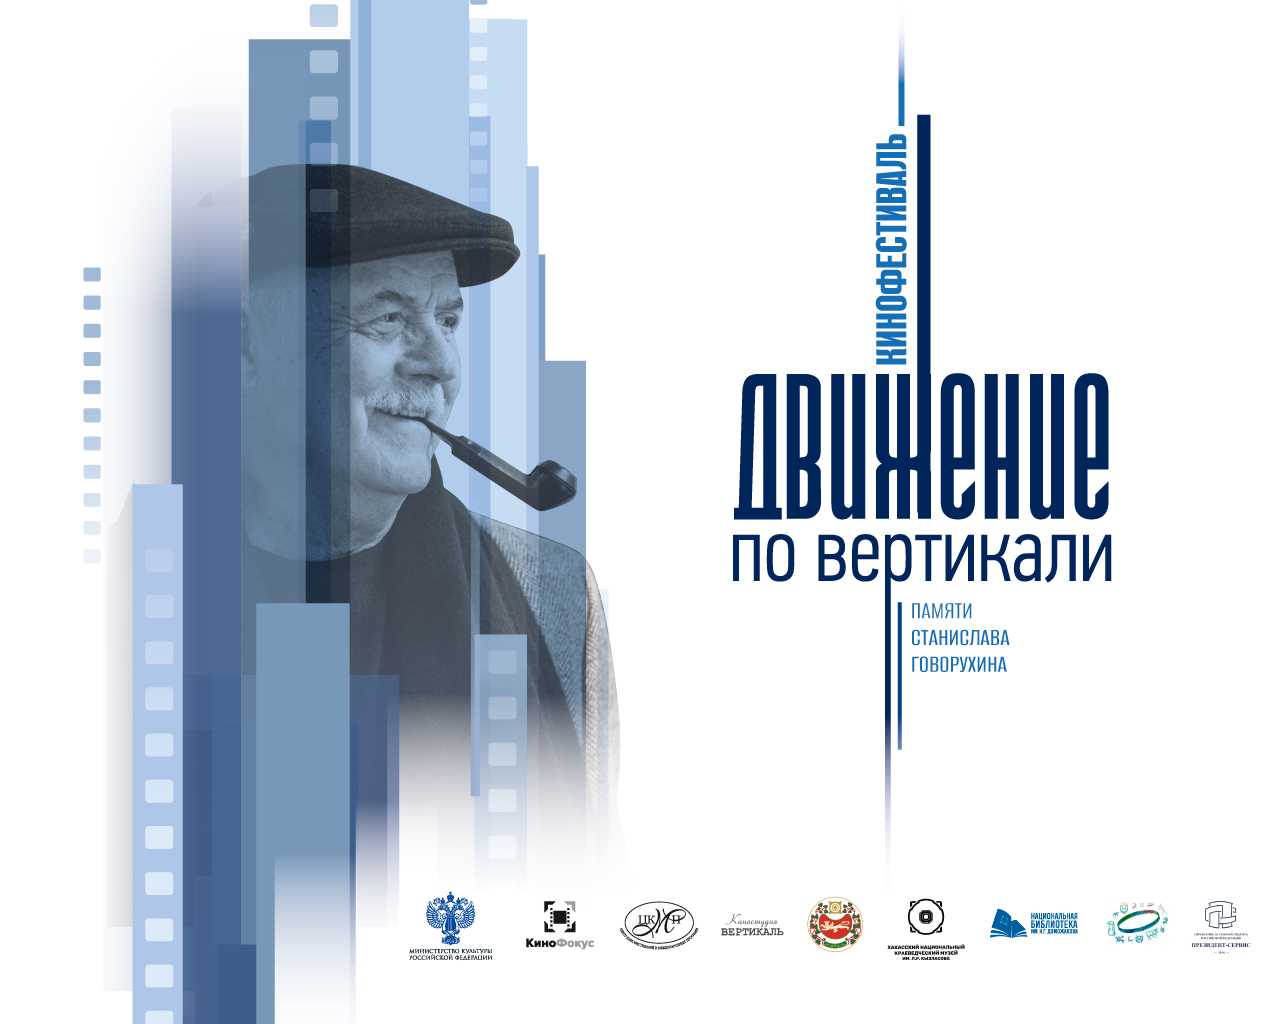 В России пройдет Кинофестиваль «Движение по вертикали», посвященный памяти Станислава Говорухина